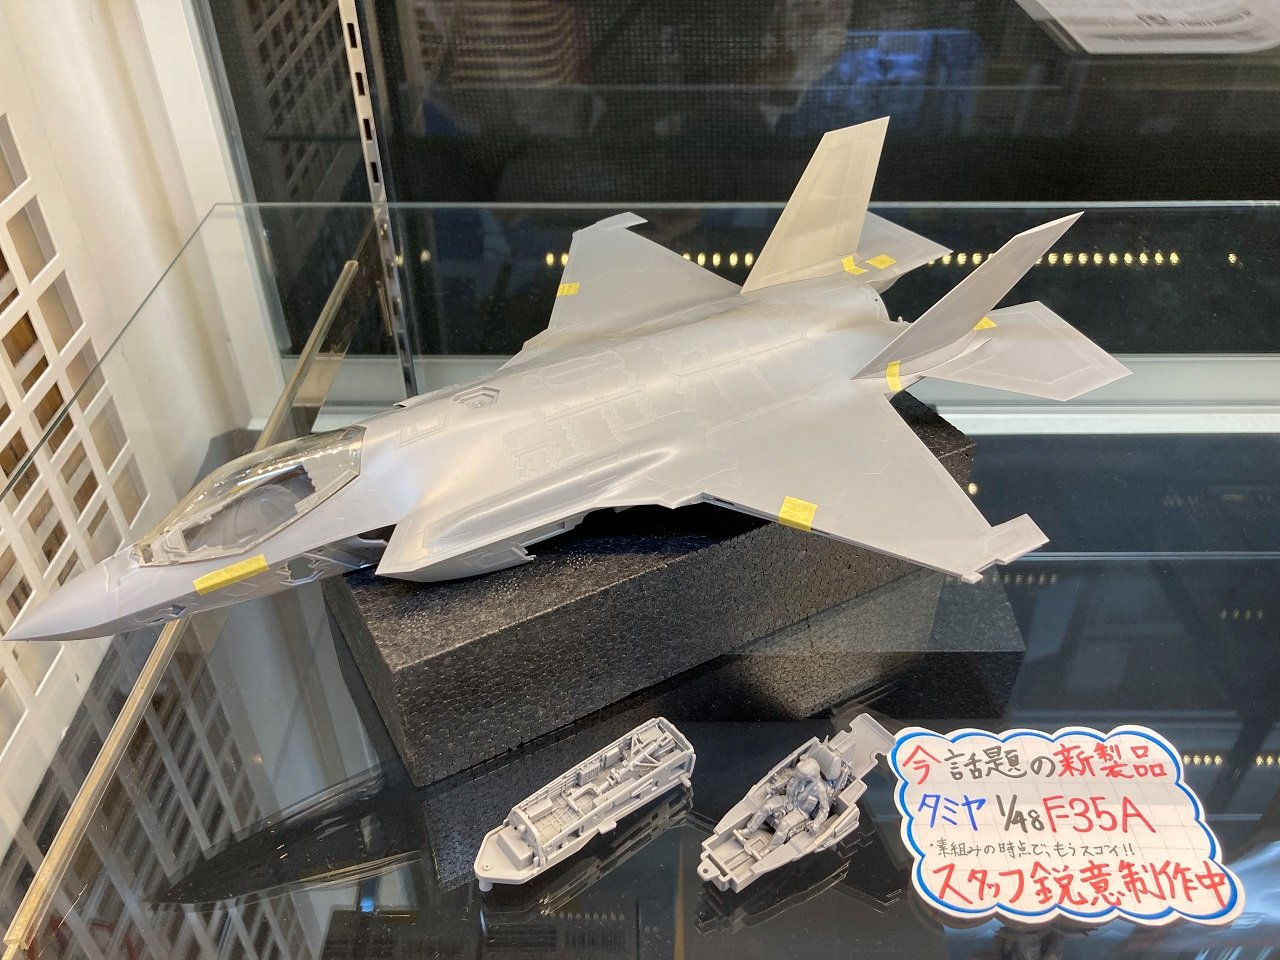 注目の新商品、「タミヤ 1/48 ロッキード マーチン F-35A ライトニング